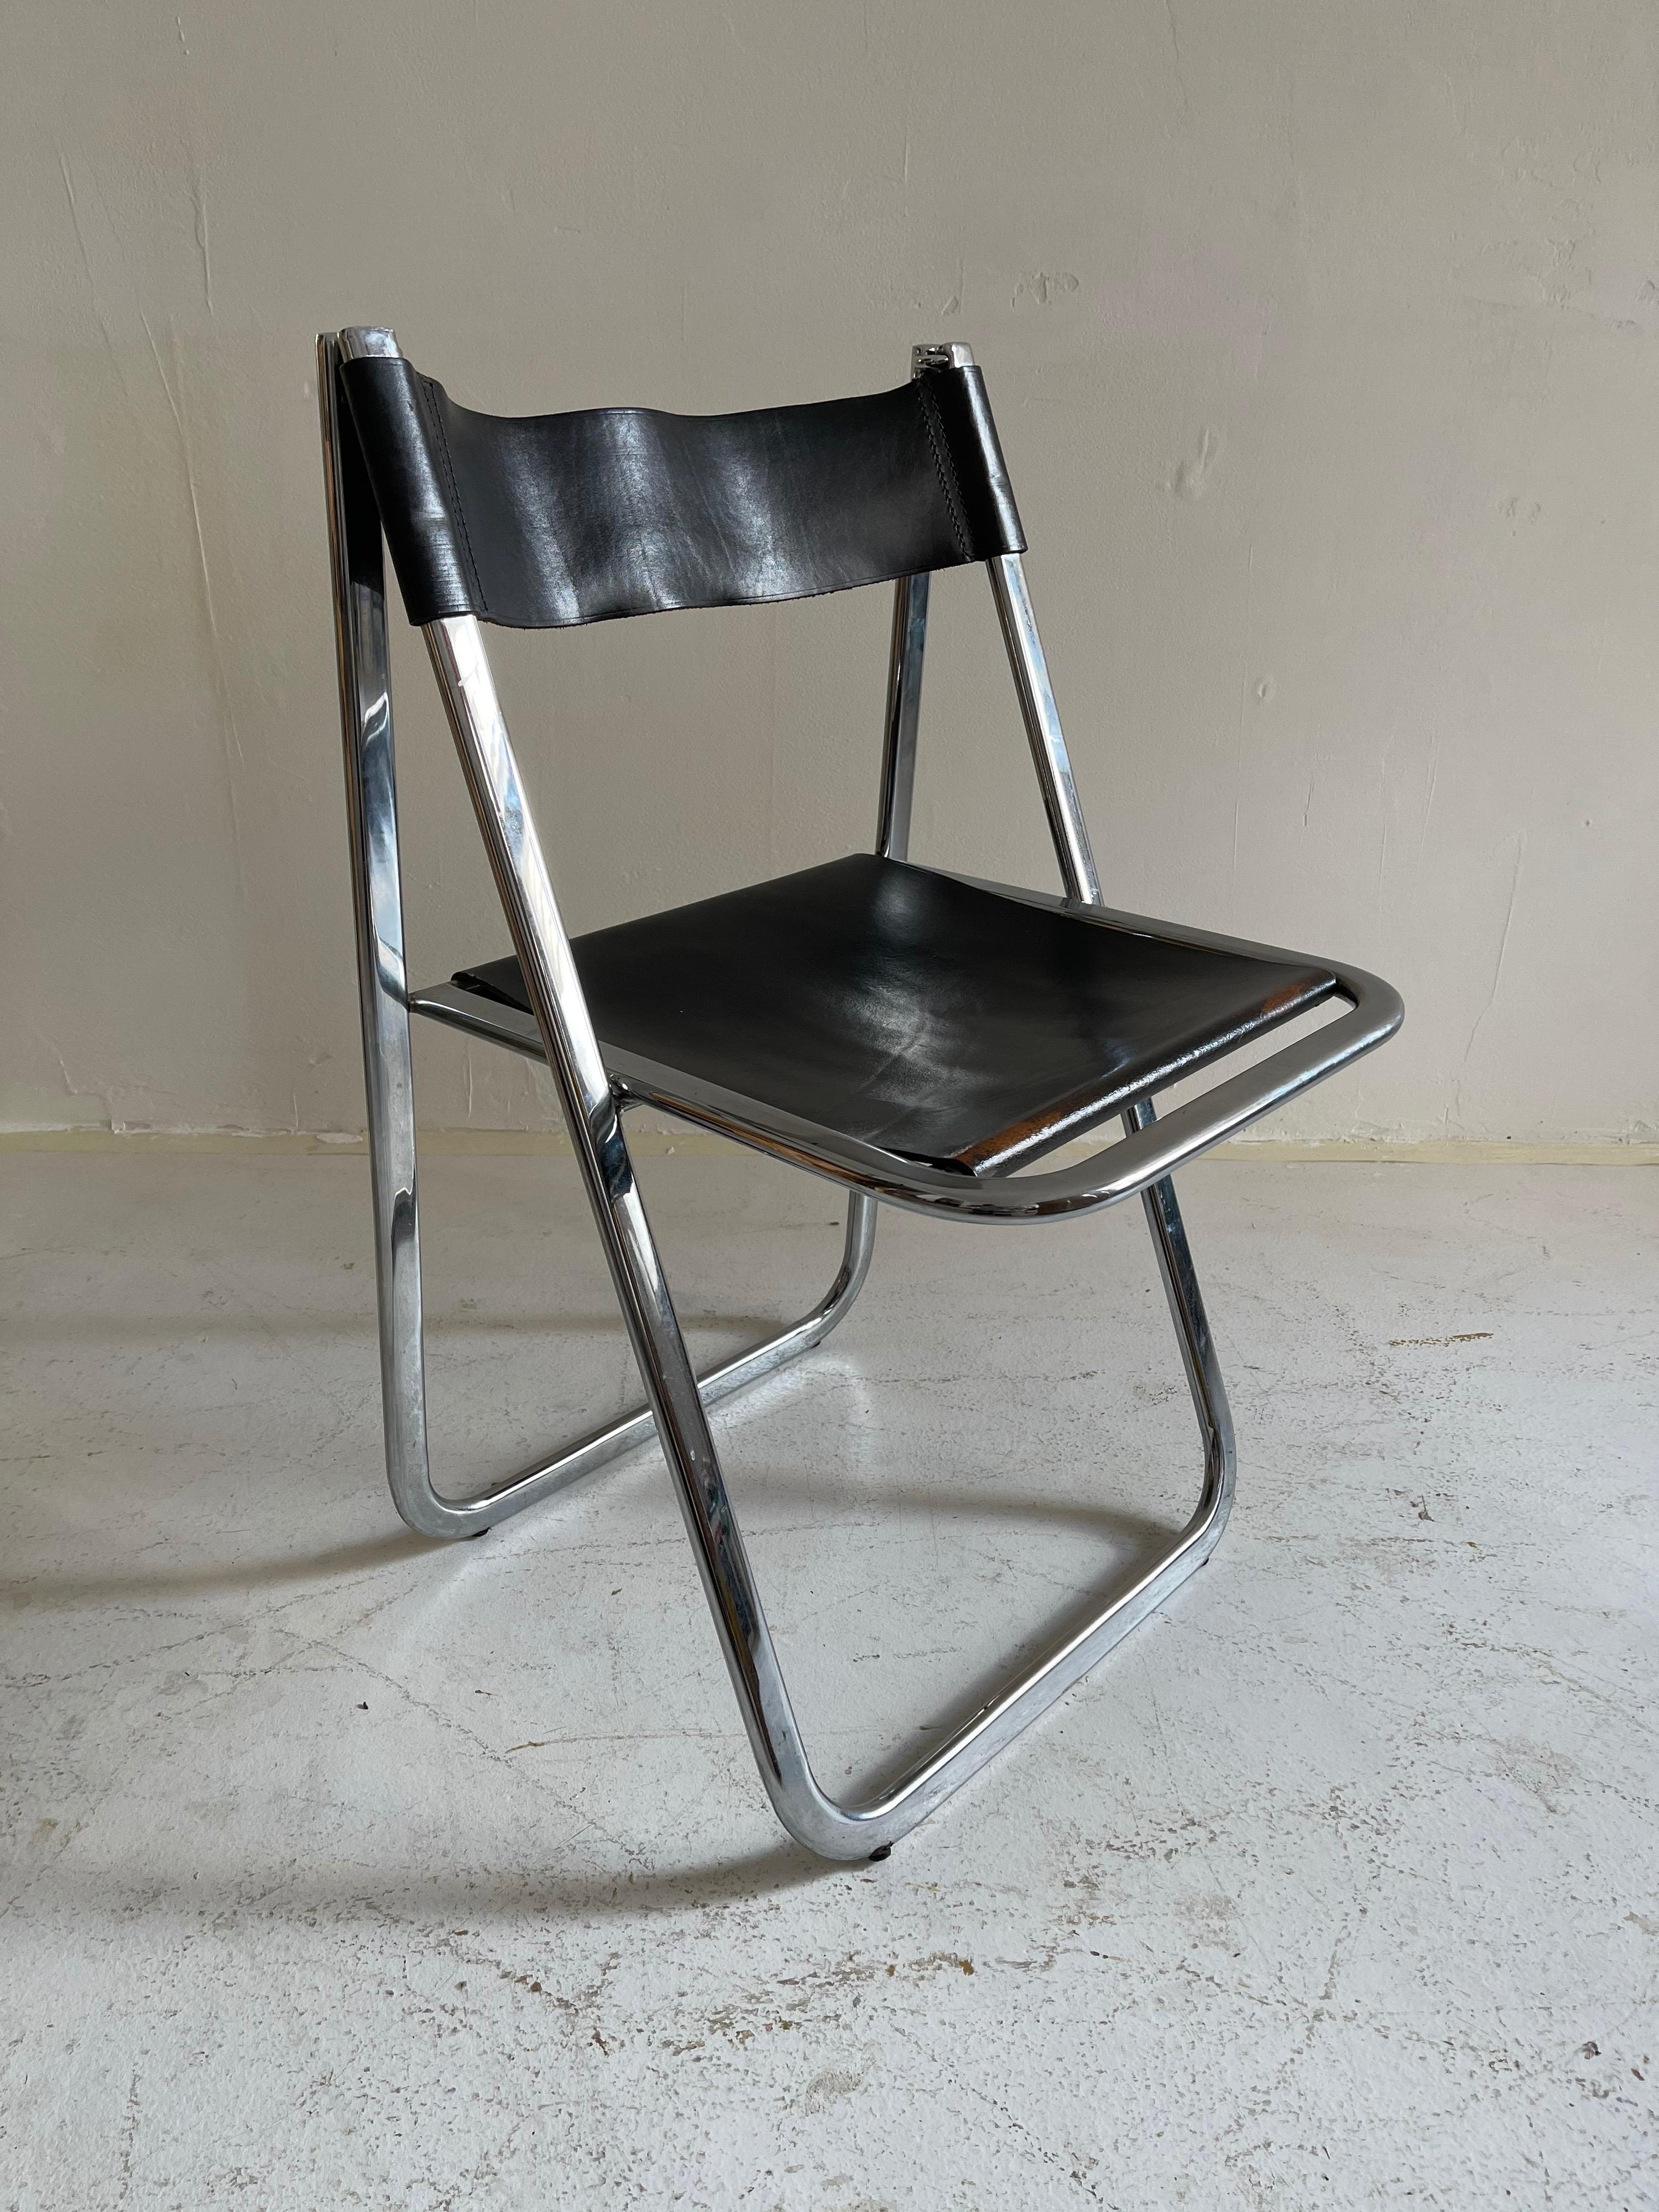 Italian Folding Chrome Chair, Italy, 1970s For Sale 3